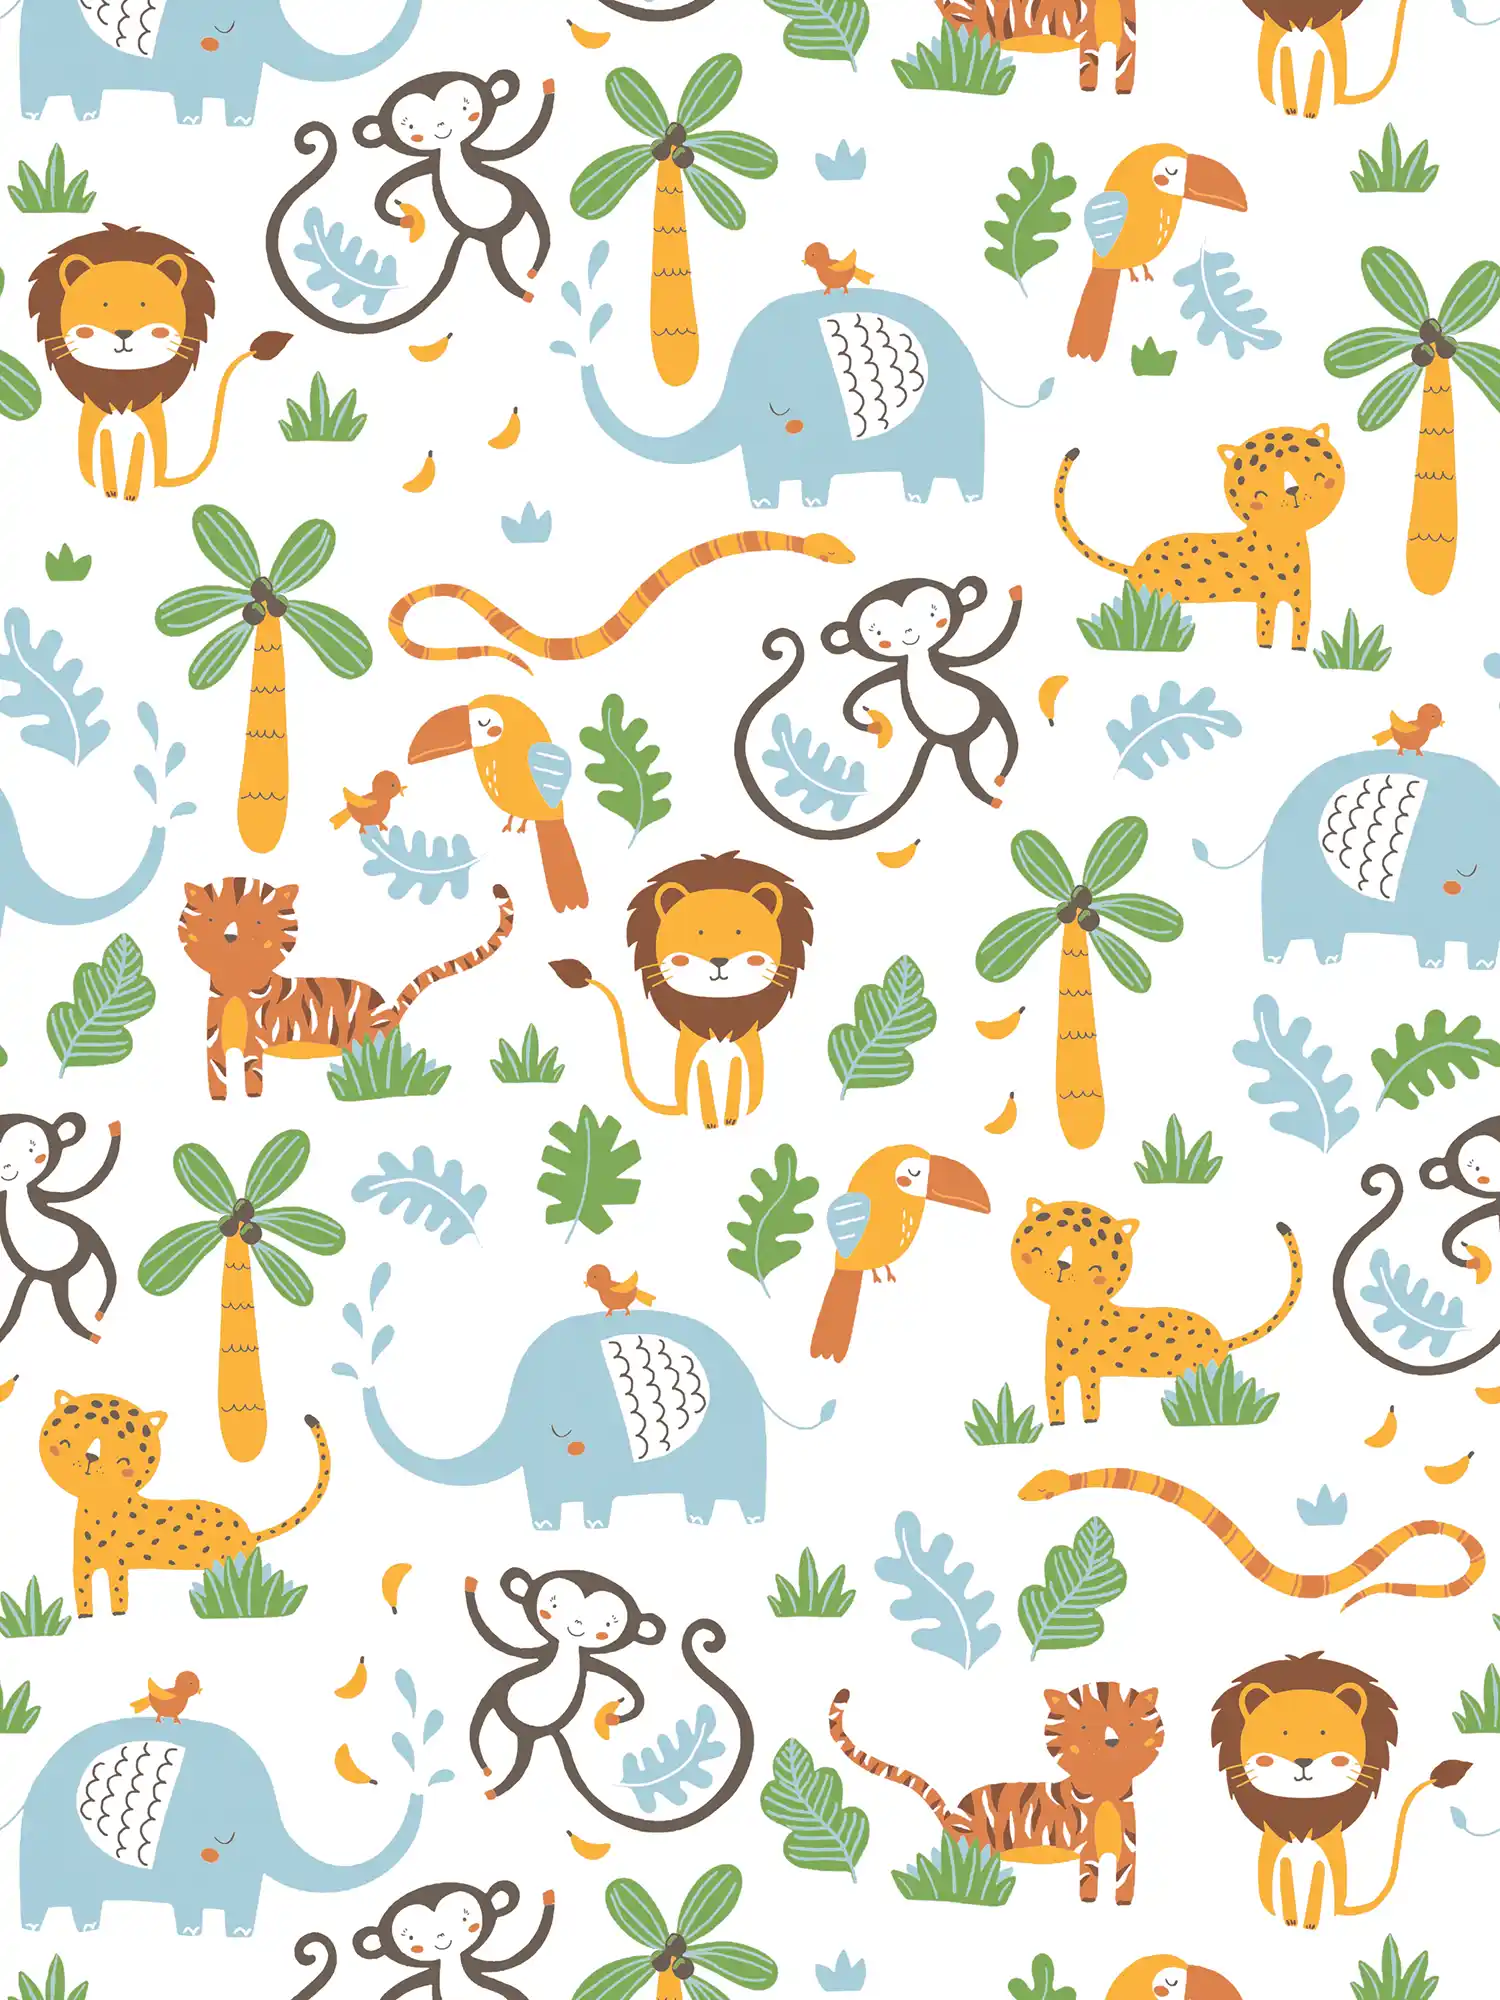         Tapete Kinderzimmer Dschungel Tiere – Bunt, Gelb, Grün
    